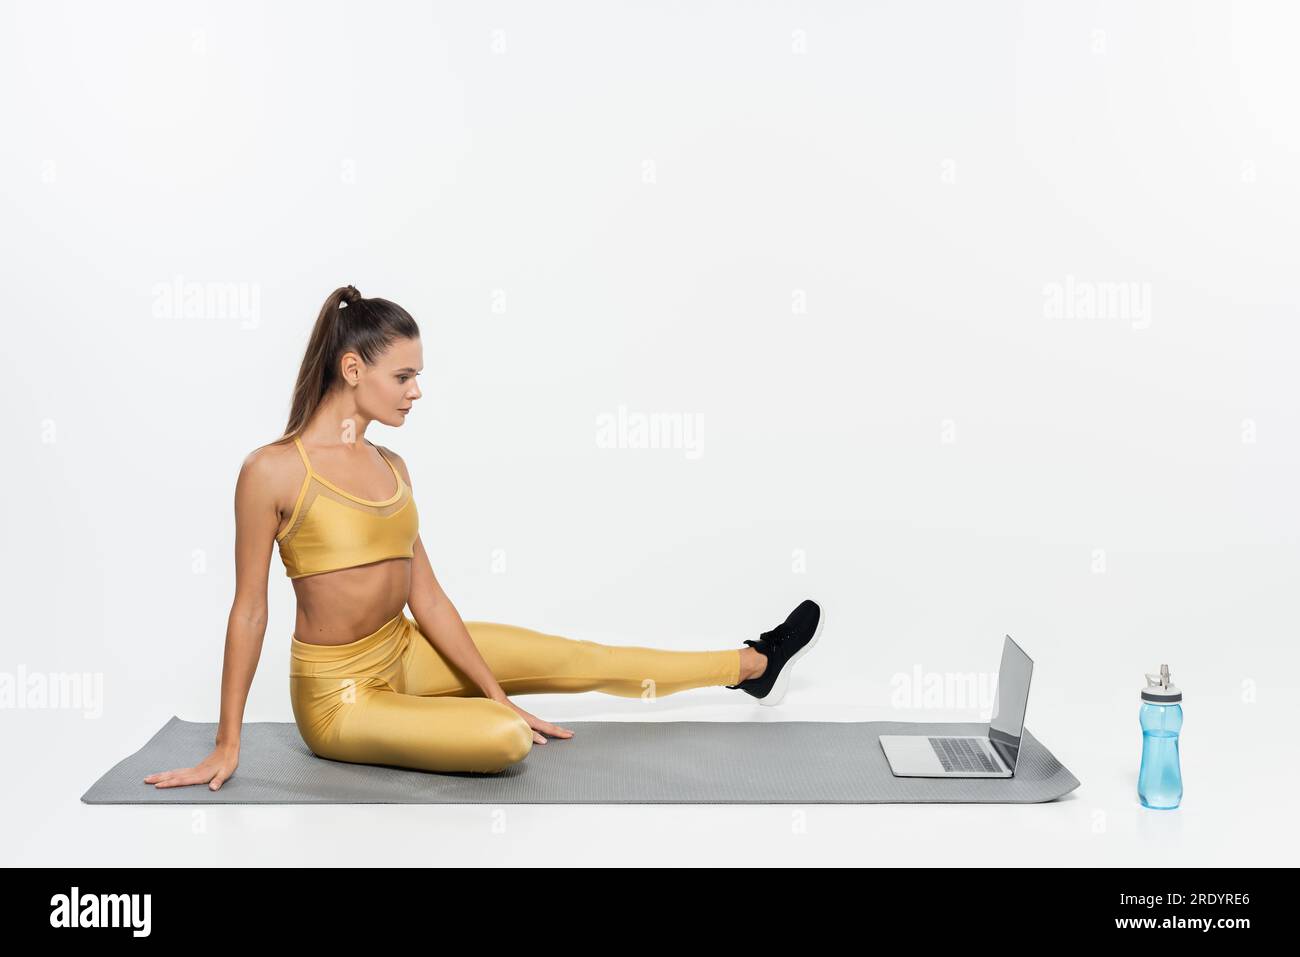 E-Sport, Frau in Sportbekleidung sitzt neben Laptop und Flasche auf Fitnessmatte, weißer Hintergrund Stockfoto